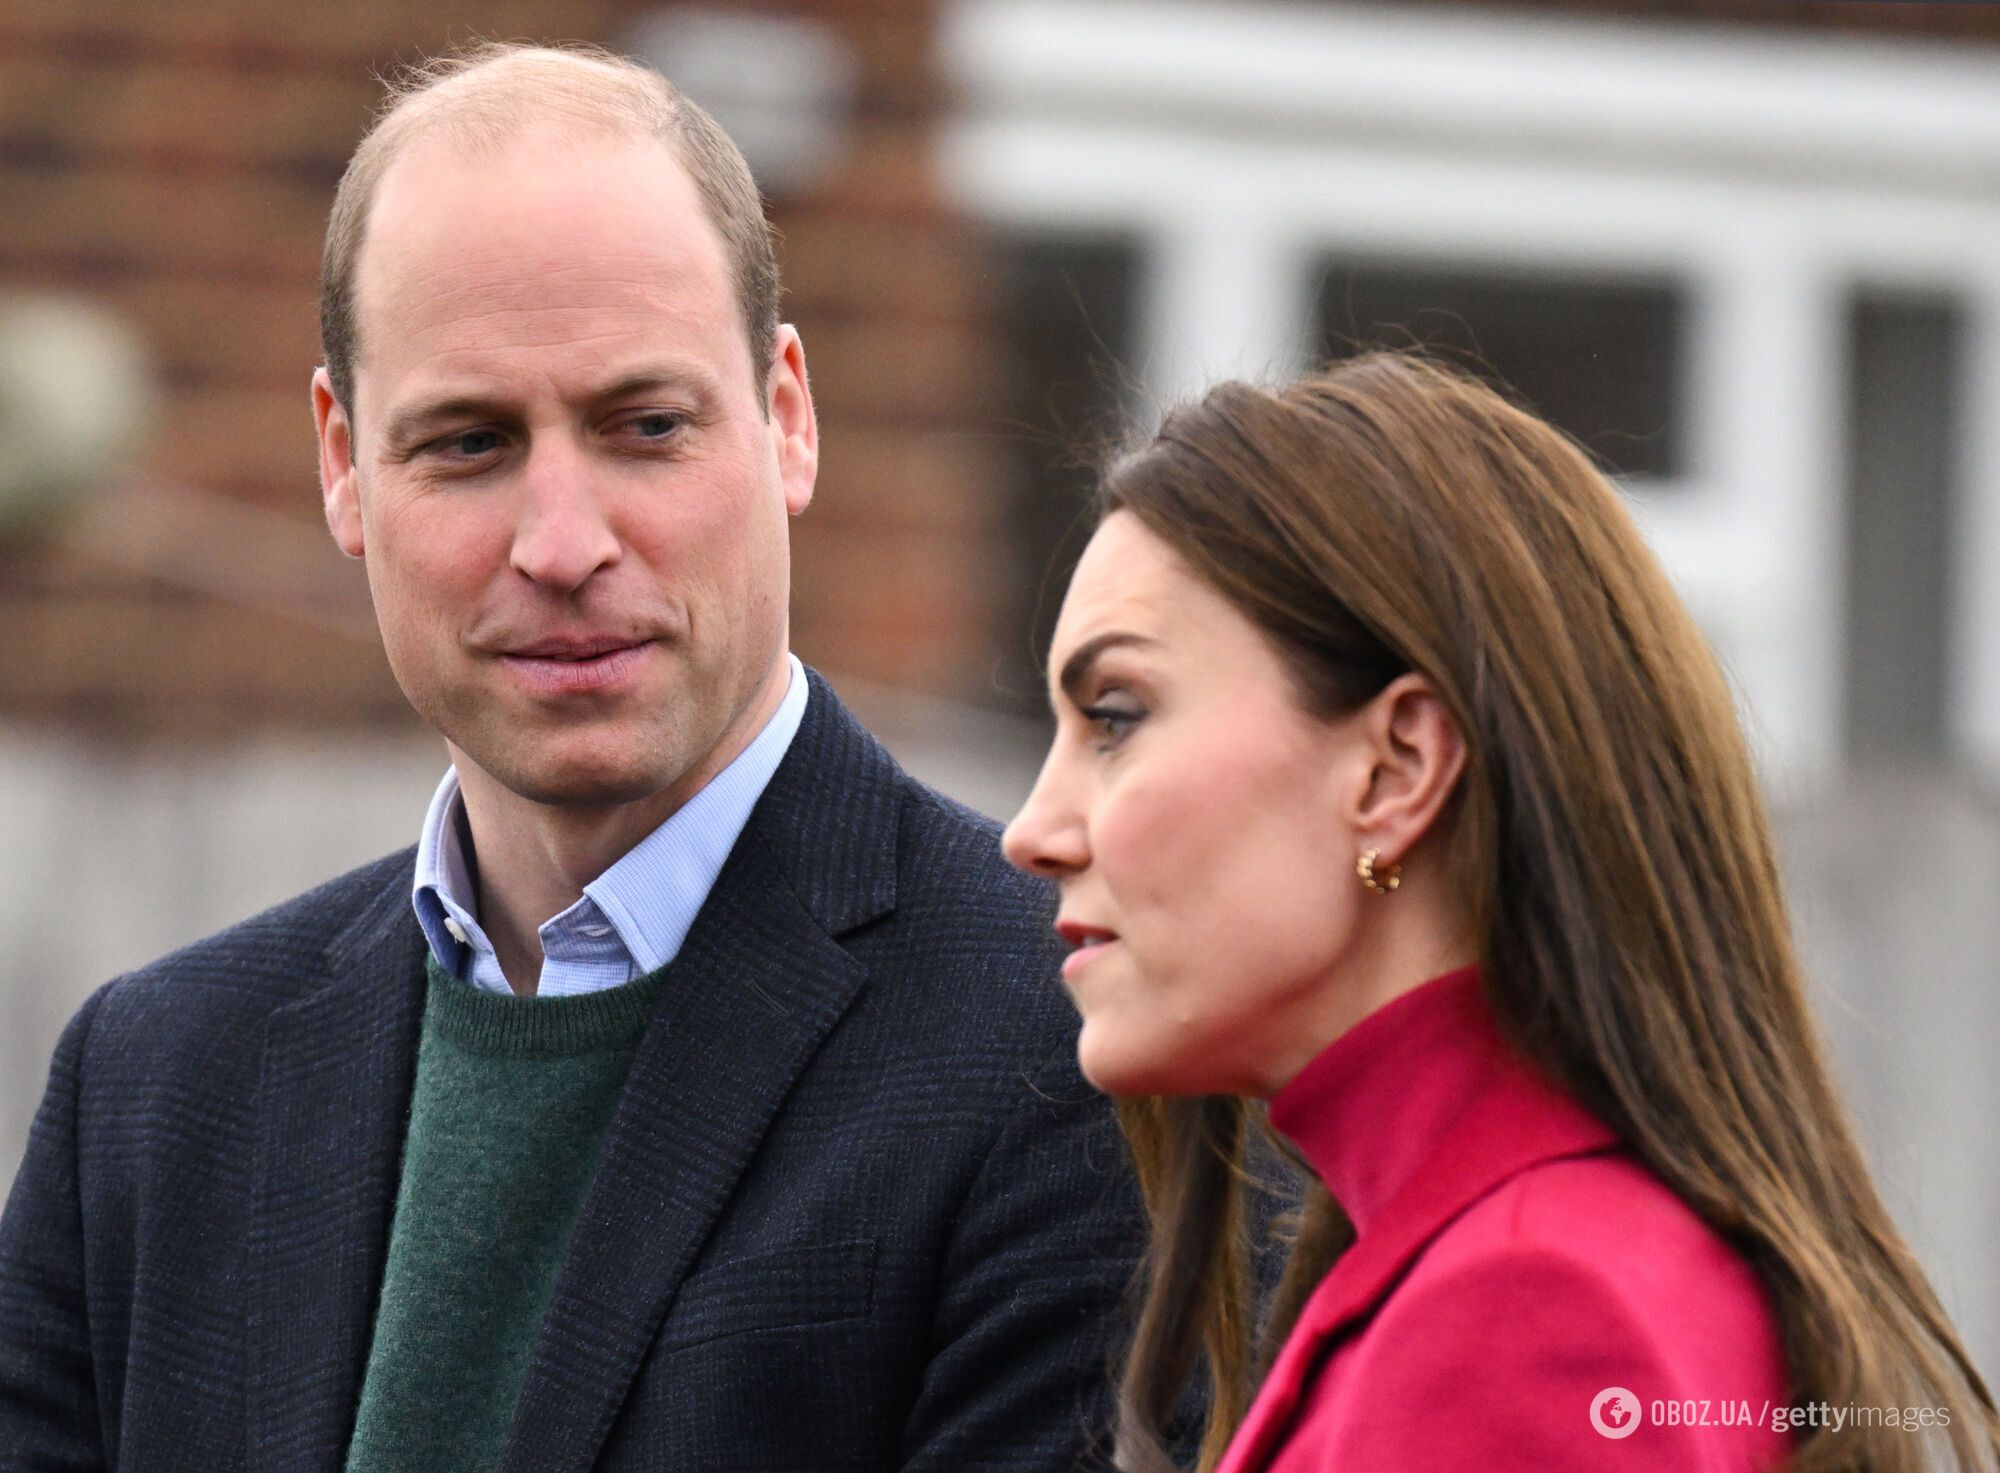 "Она моя!" 10 красноречивых фото, отражающих истинное отношение принца Уильяма к Кейт Миддлтон